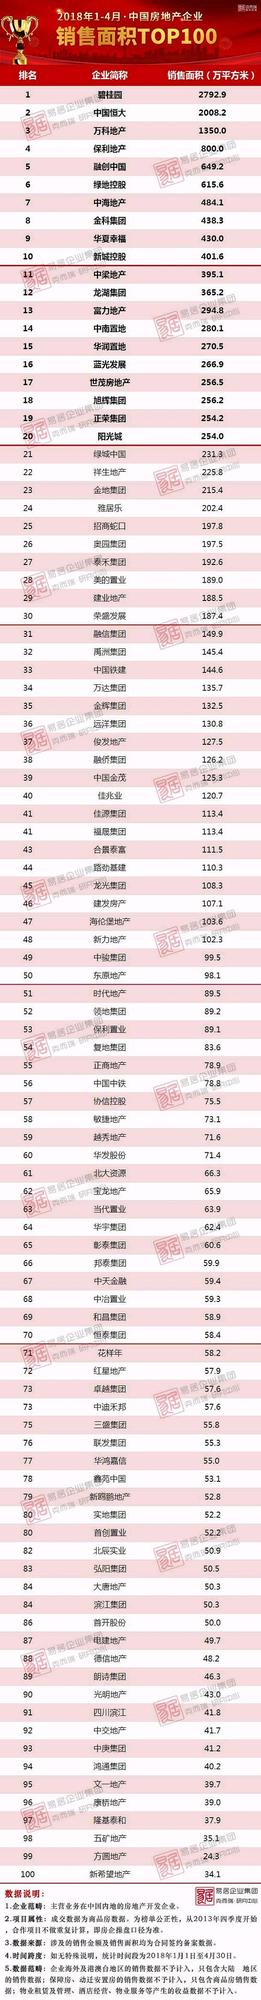 2018年1-4月中国房地产企业销售TOP100排行榜